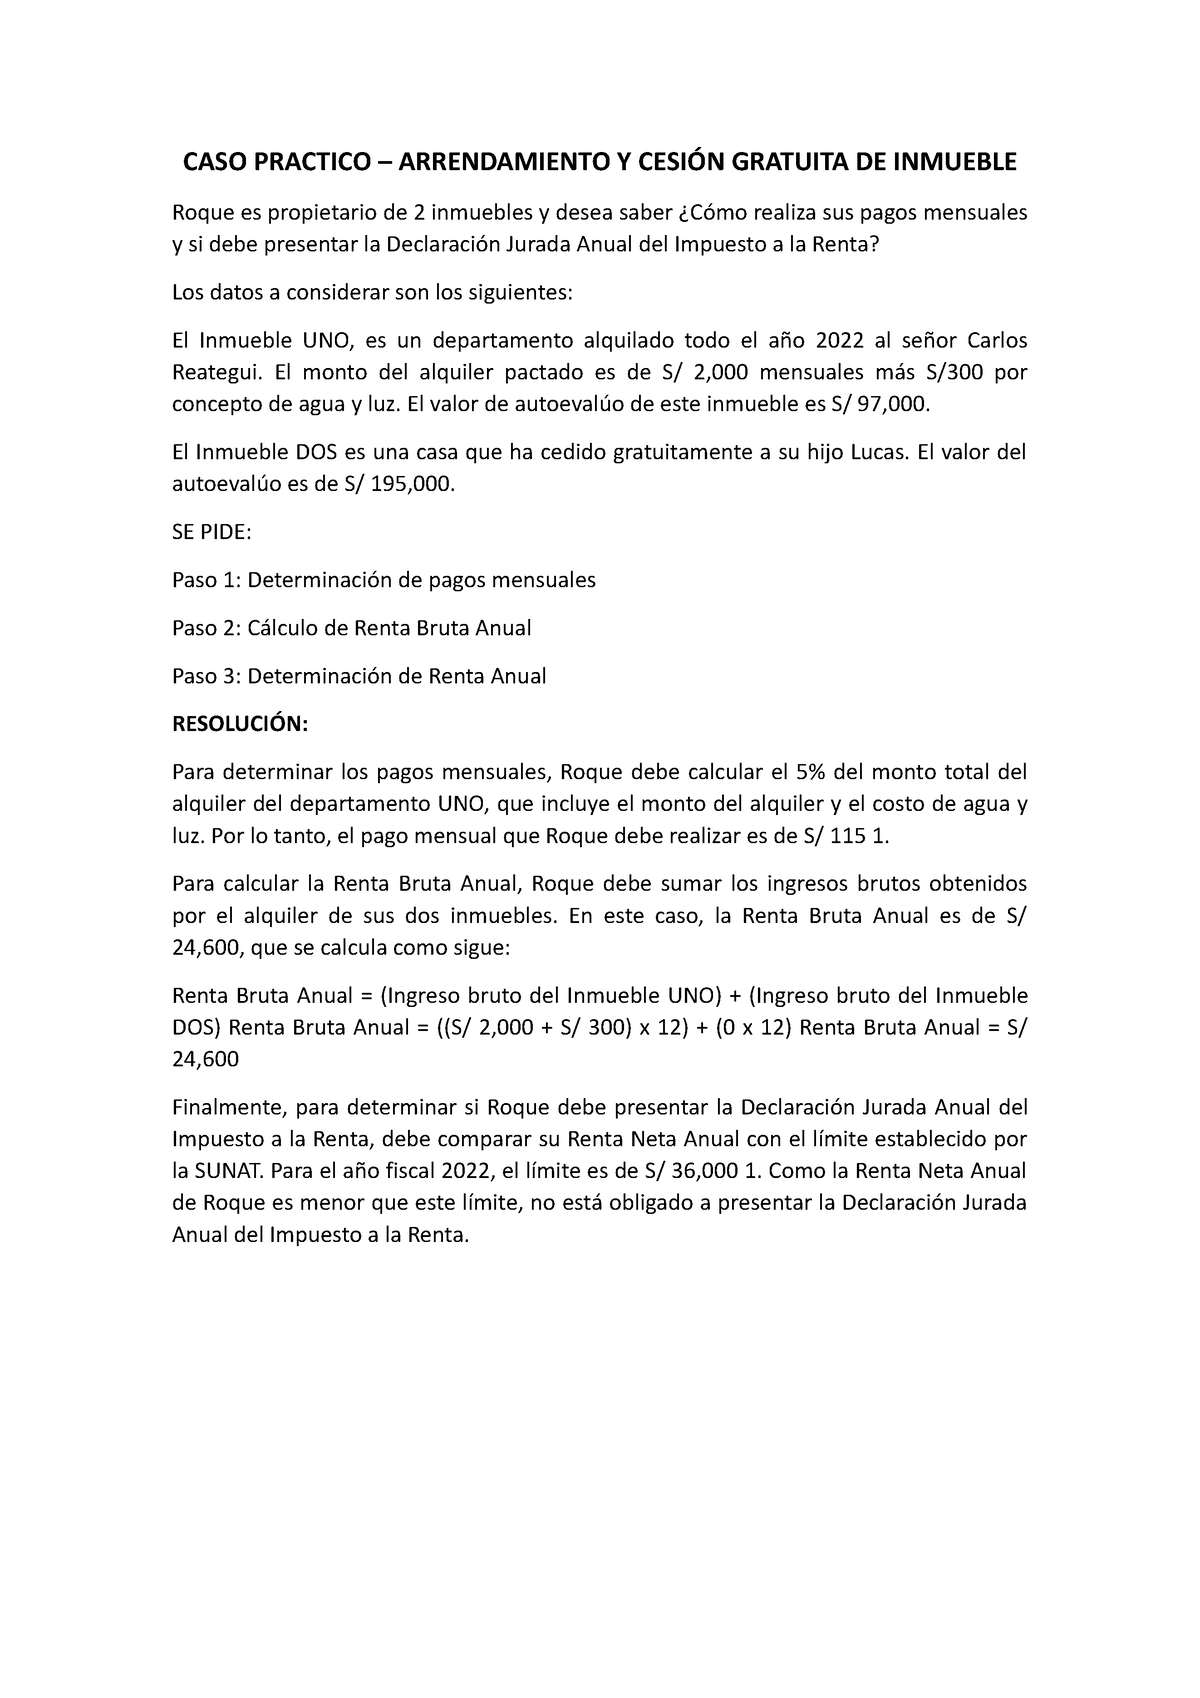 Resolucion Del Caso Practico Caso Practico Arrendamiento Y CesiÓn Gratuita De Inmueble Roque 2566